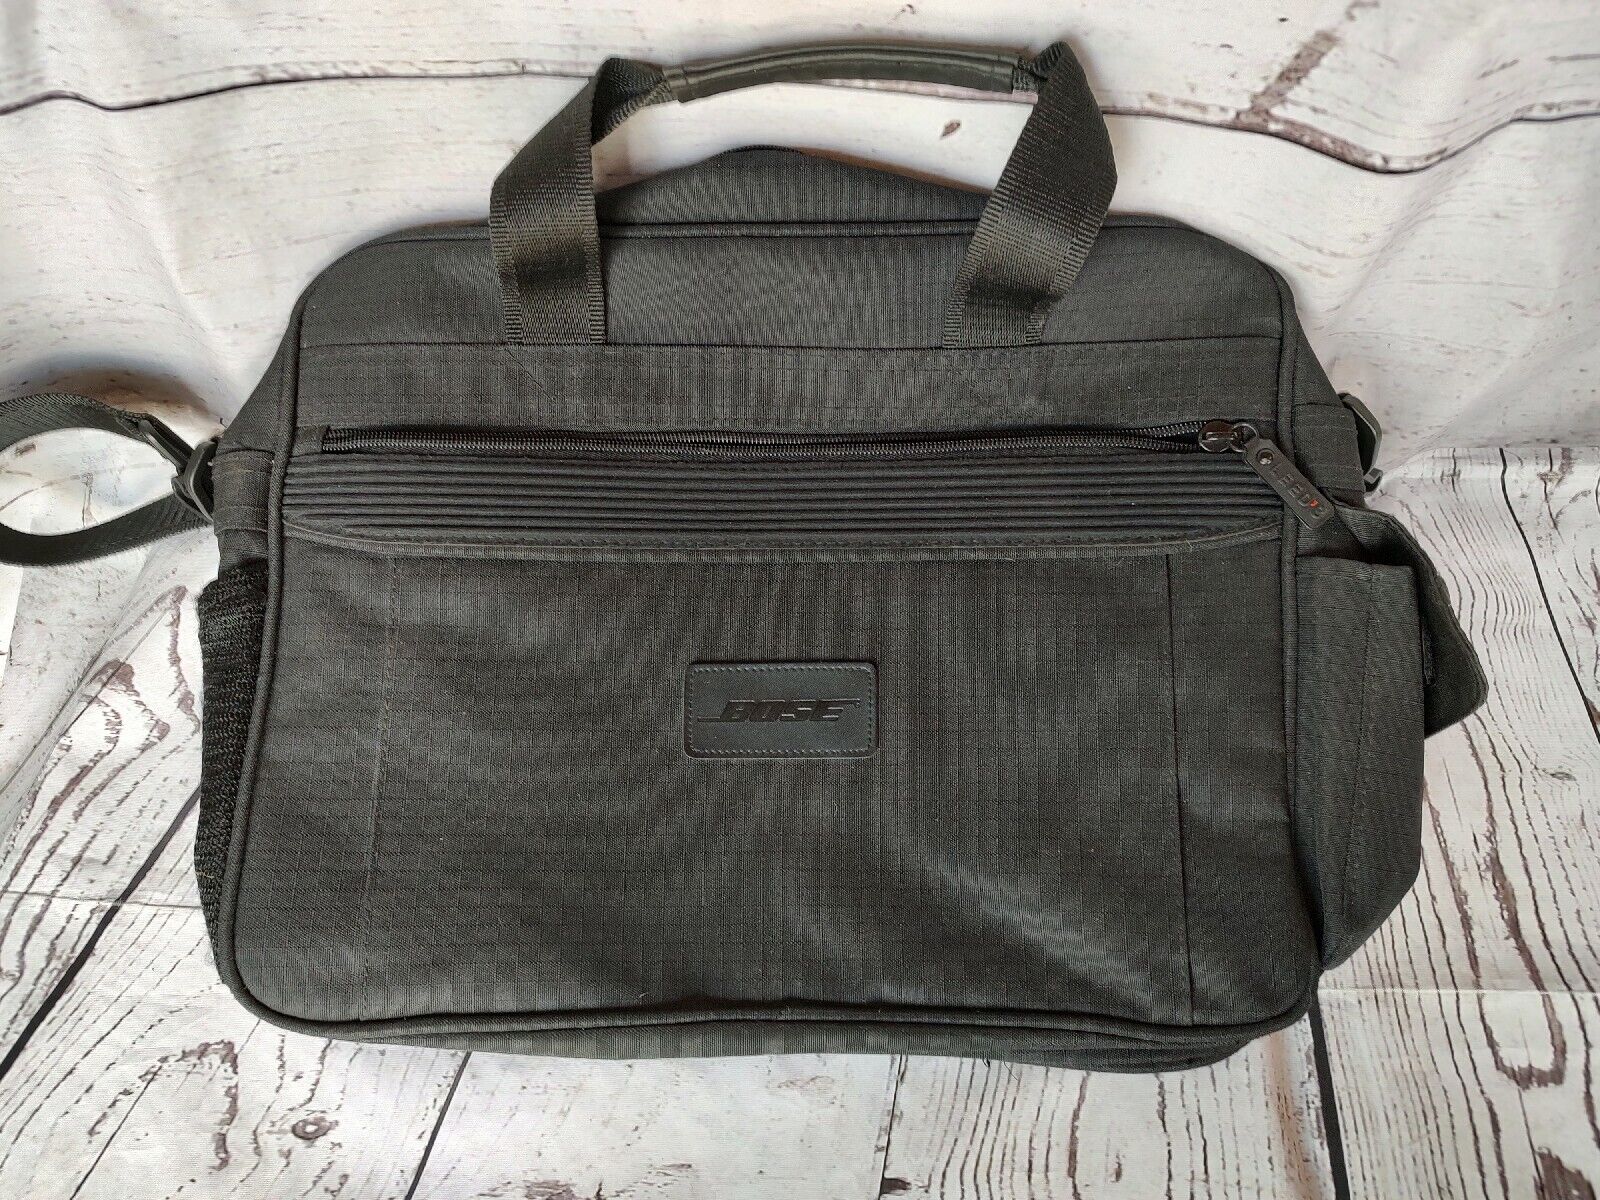 Bose Leed's Messenger Laptop Bag